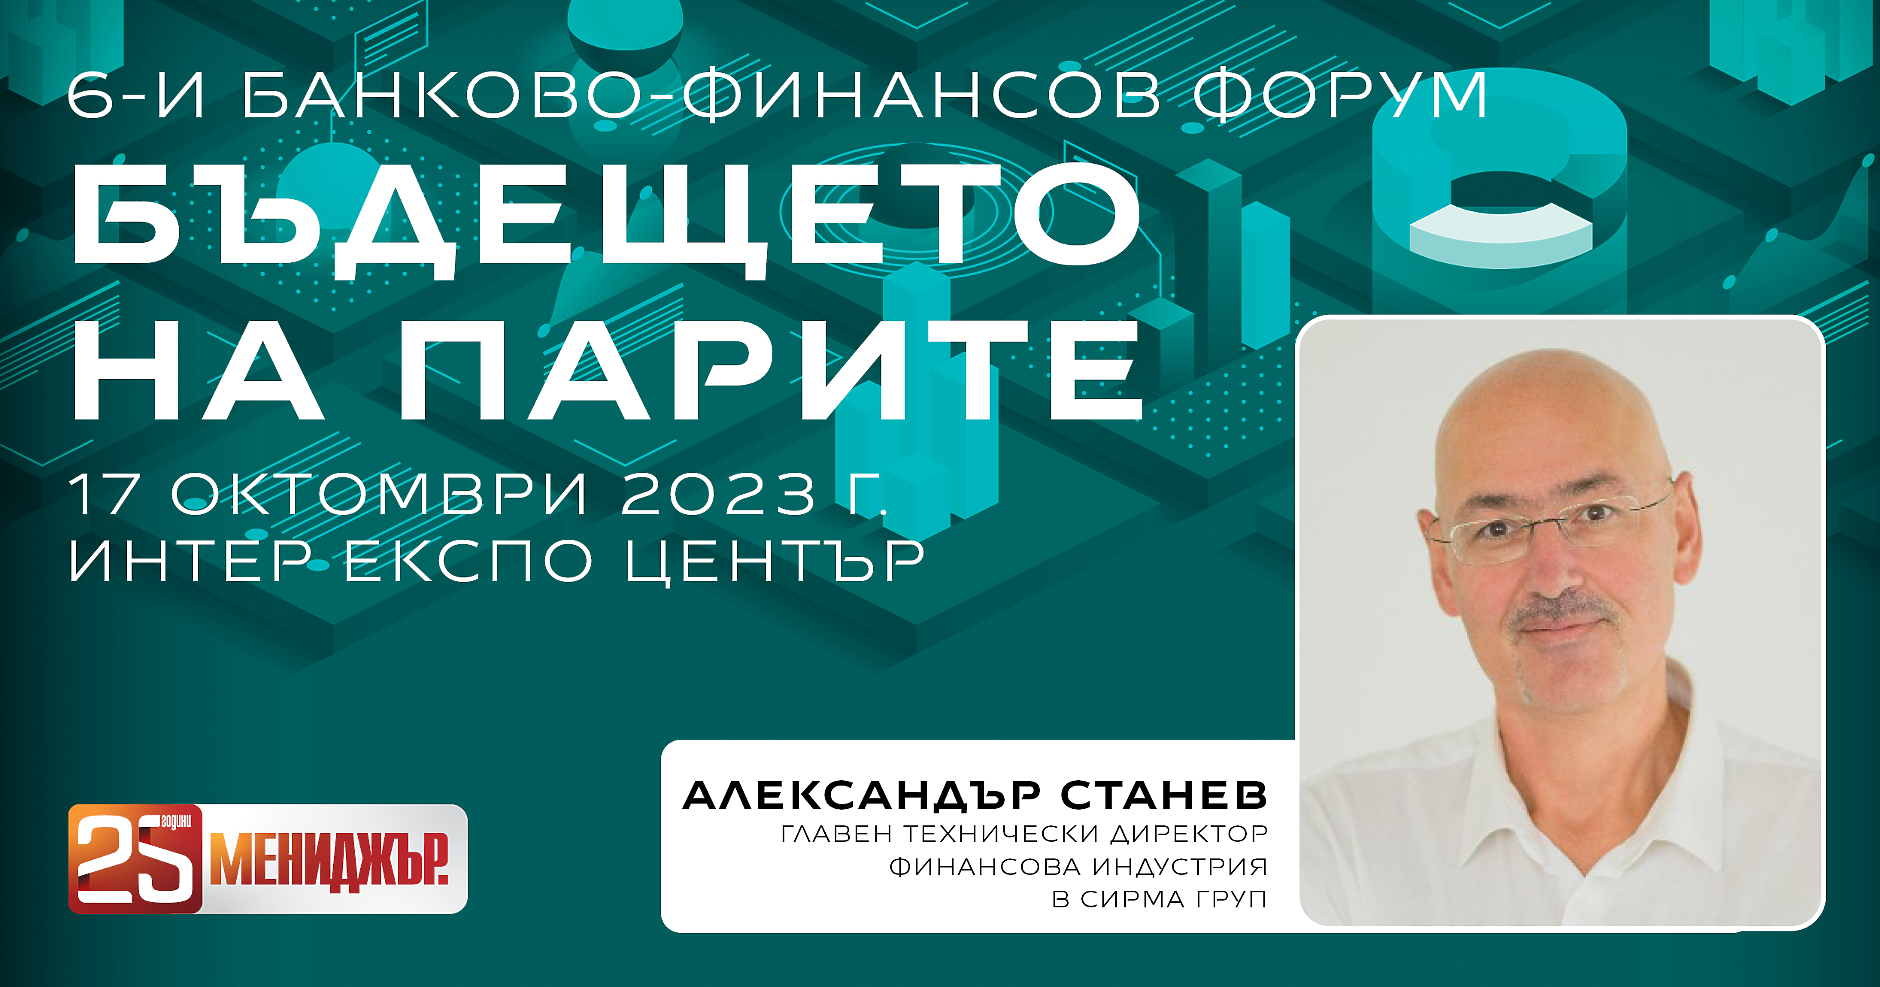 Александър Станев, главен технически директор ,,Финансова индустрия“ в Sirma, е